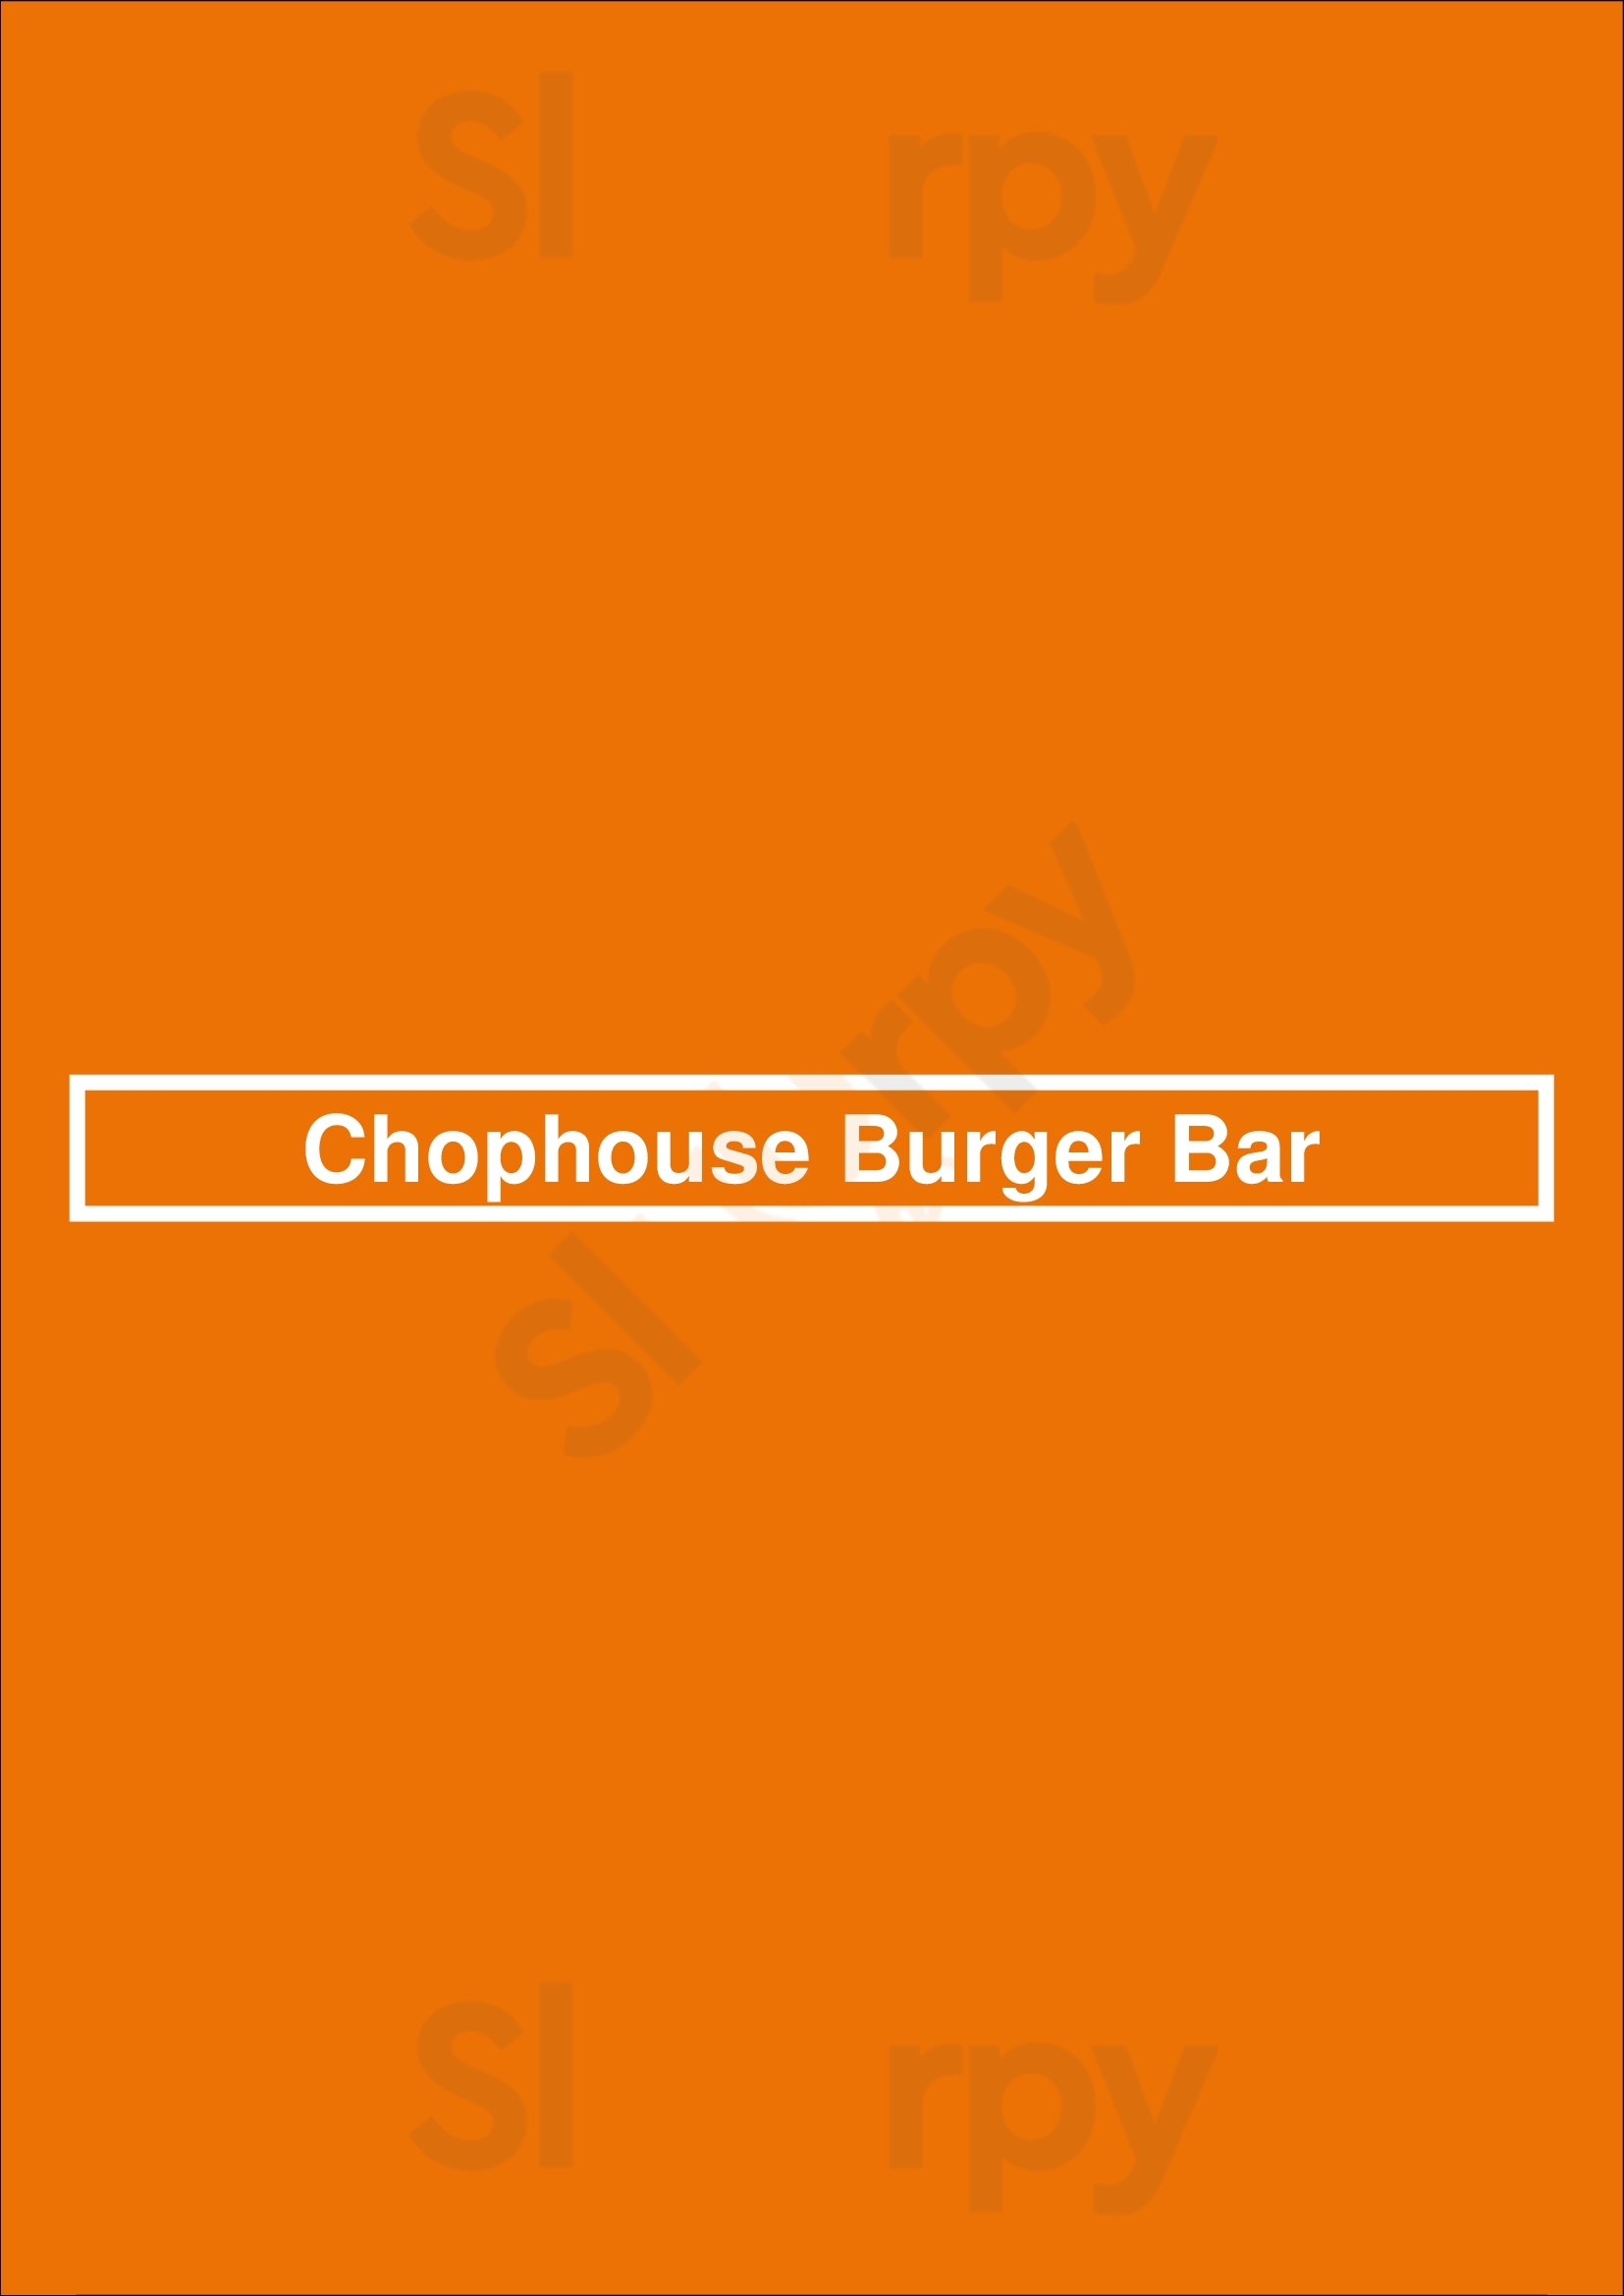 Chophouse Burger Bar St. Catharines Menu - 1